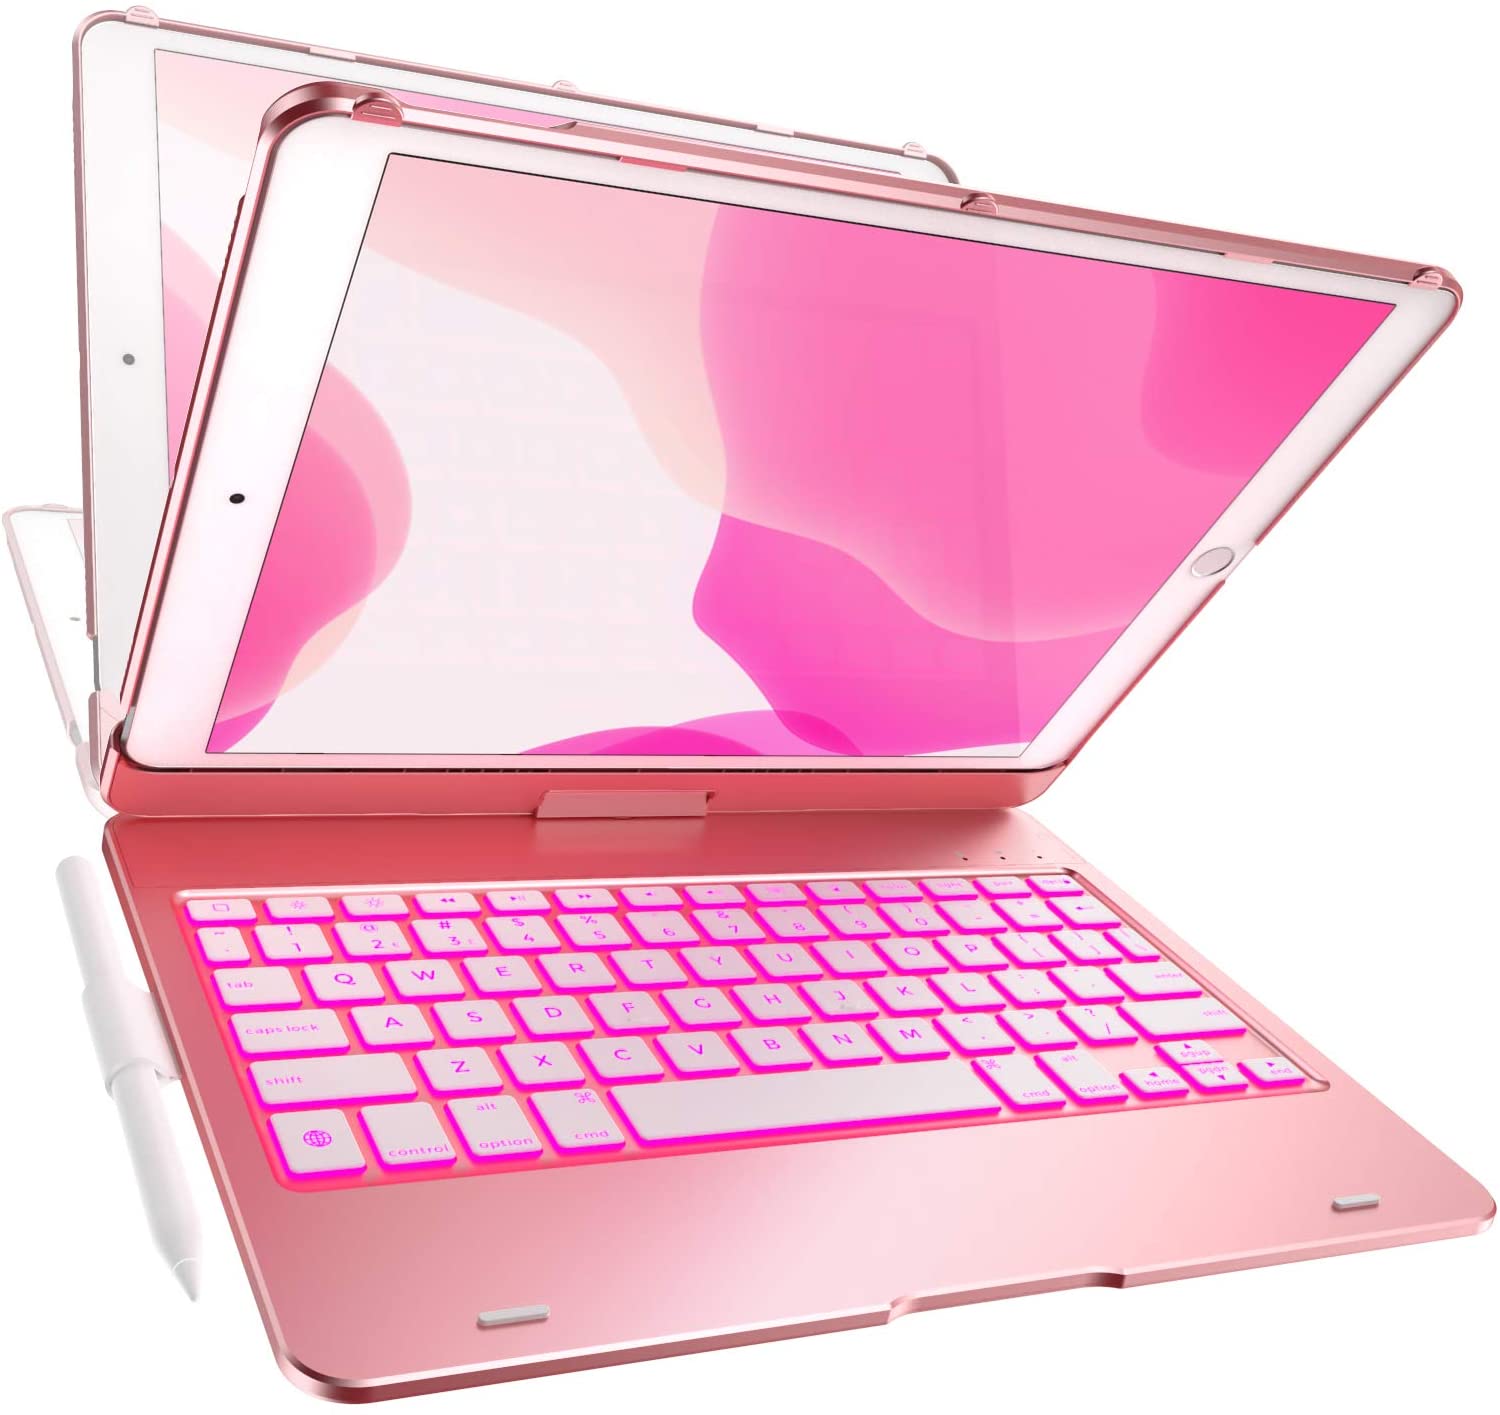 Yekbee Ipad Keyboard Case Rose Gold Backlight